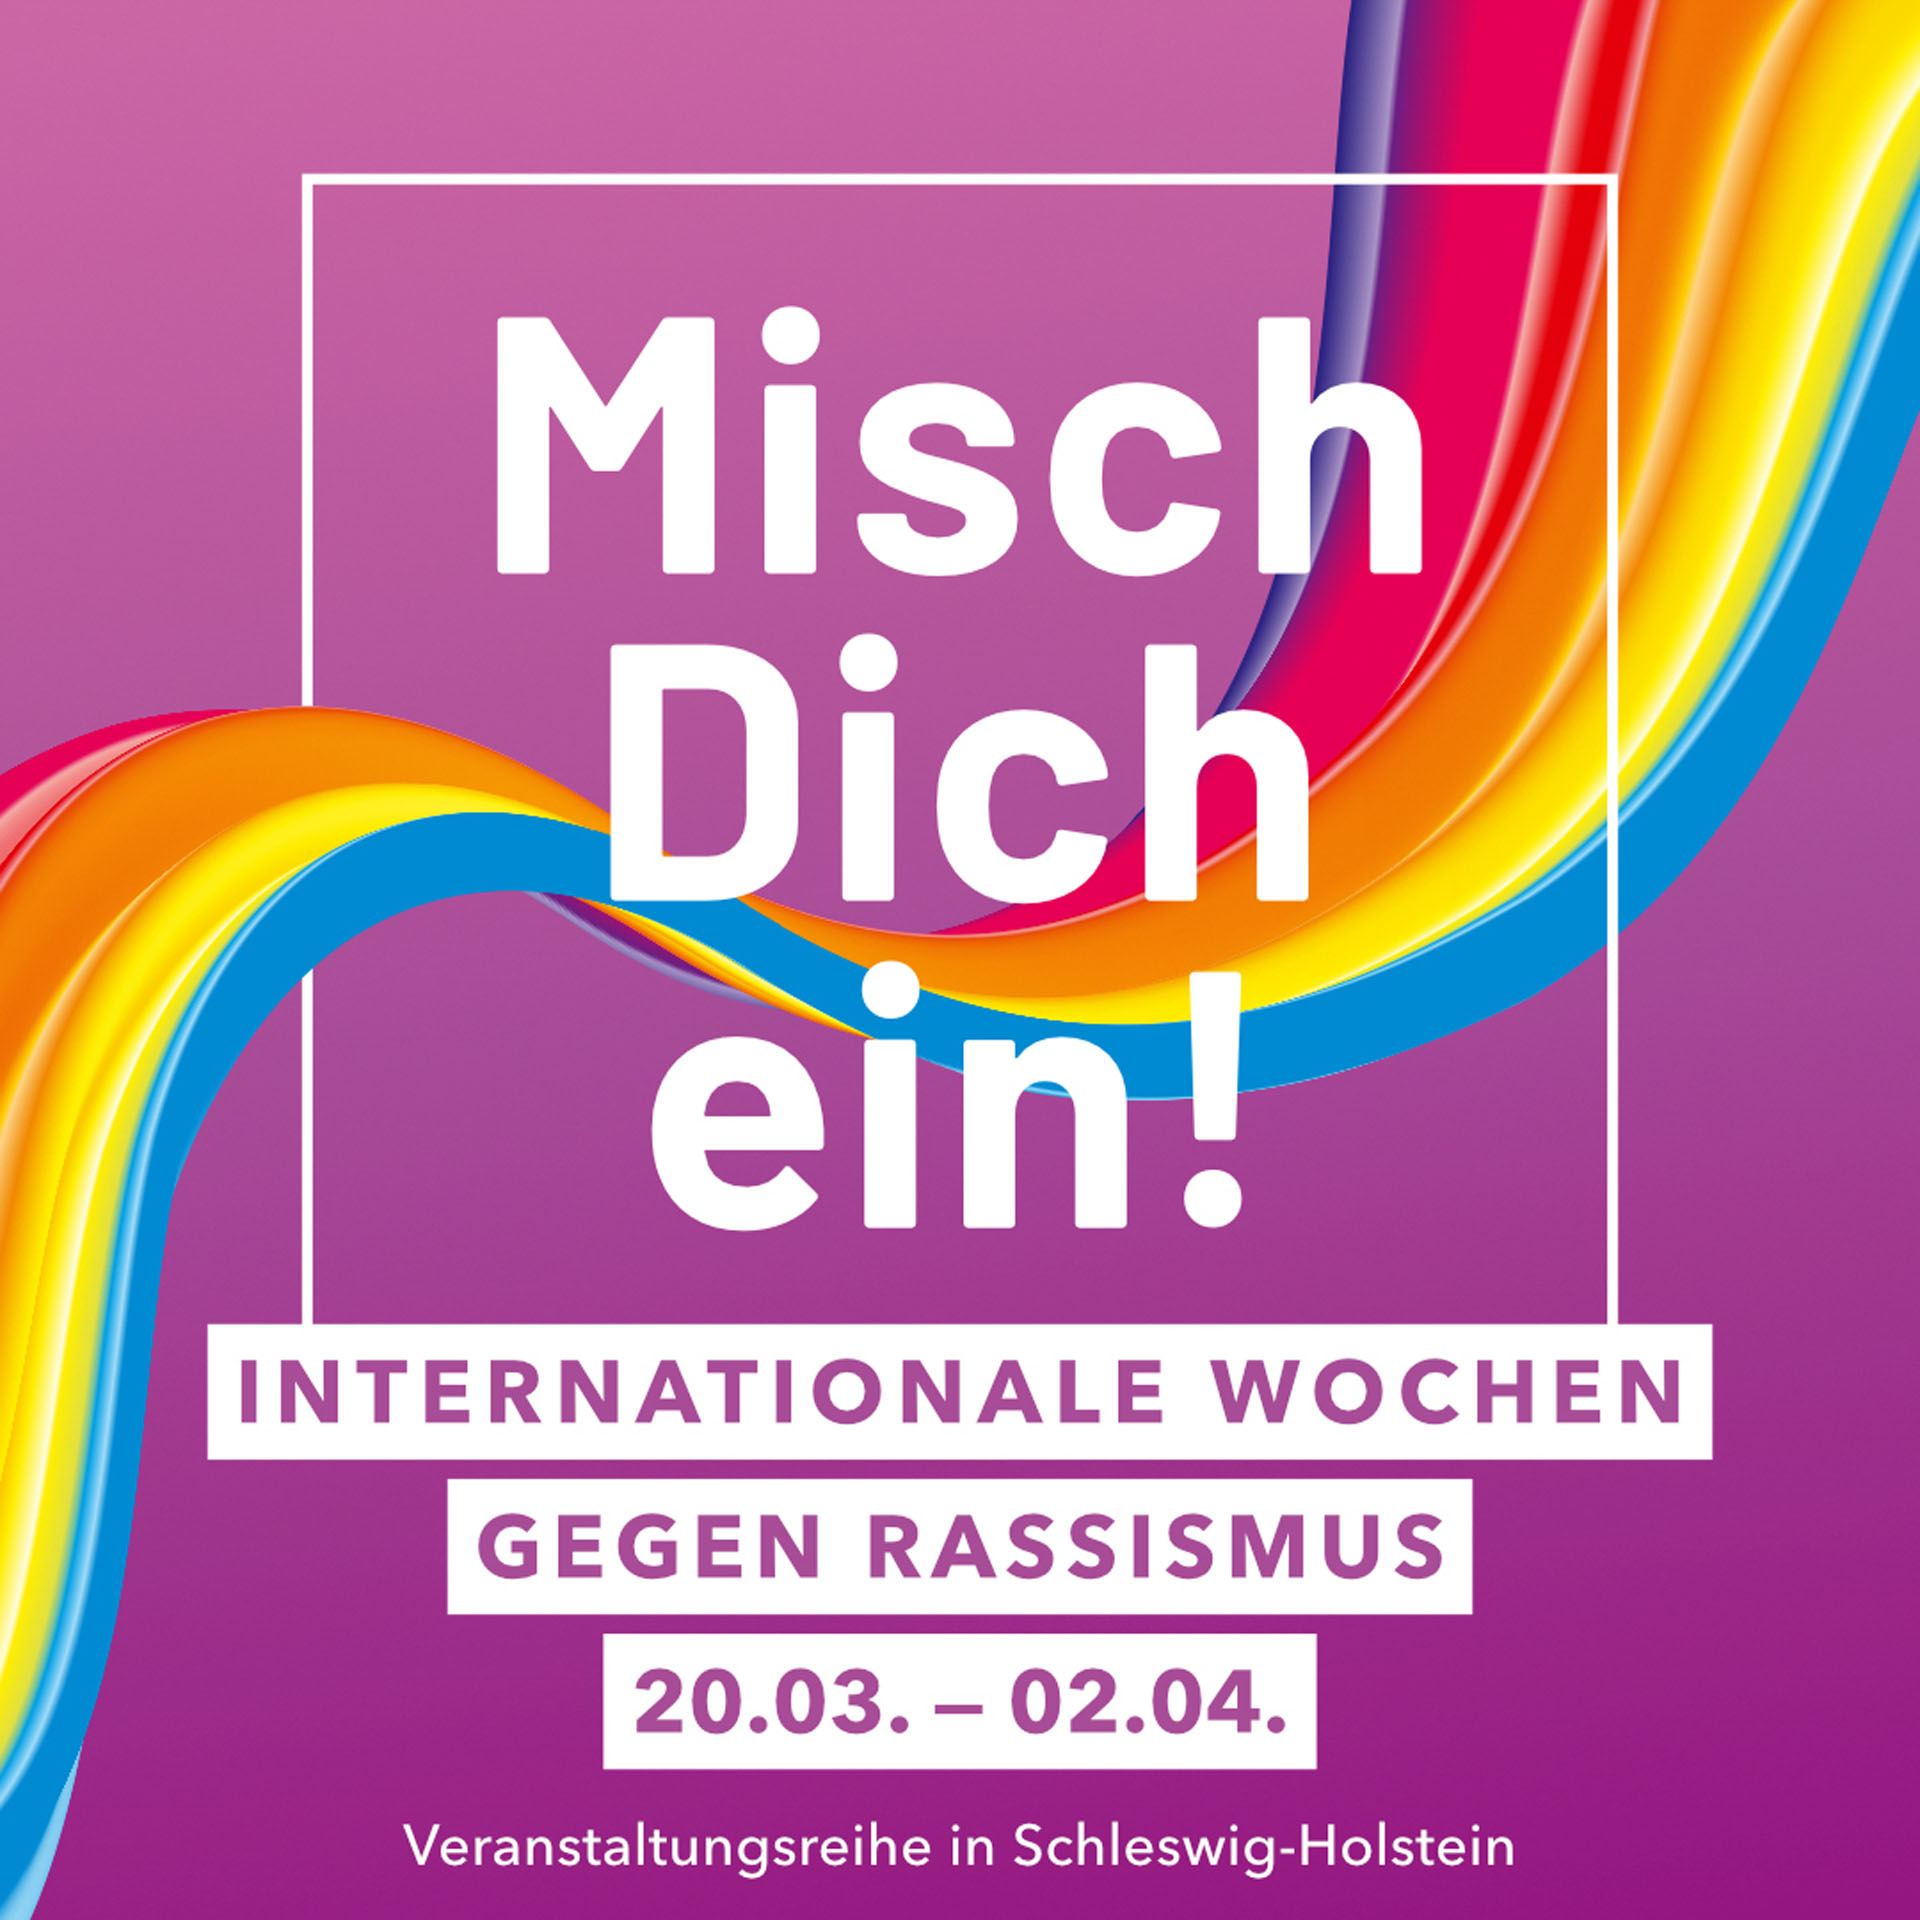 Flyer: Internationale Wochen gegen Rassismus in Schleswig-Holstein unter dem Motto „Misch dich ein“